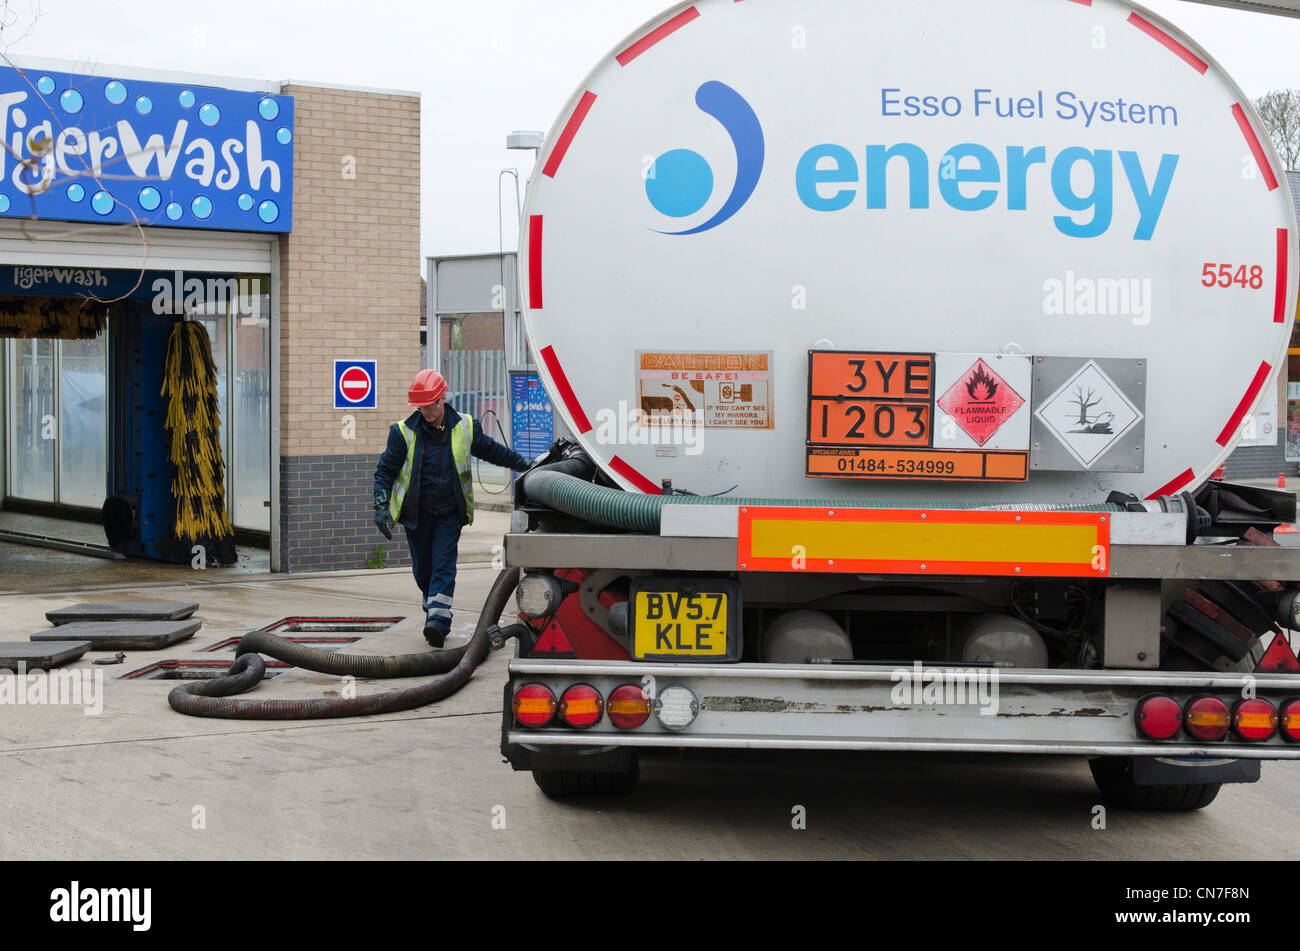 Chauffeur camion-citerne de carburant Esso se remplit d'ESSO station service Holtspur les réservoirs de Beaconsfield. Les pilotes de navires-citernes de carburant des différends Avril 2012 Crise Banque D'Images